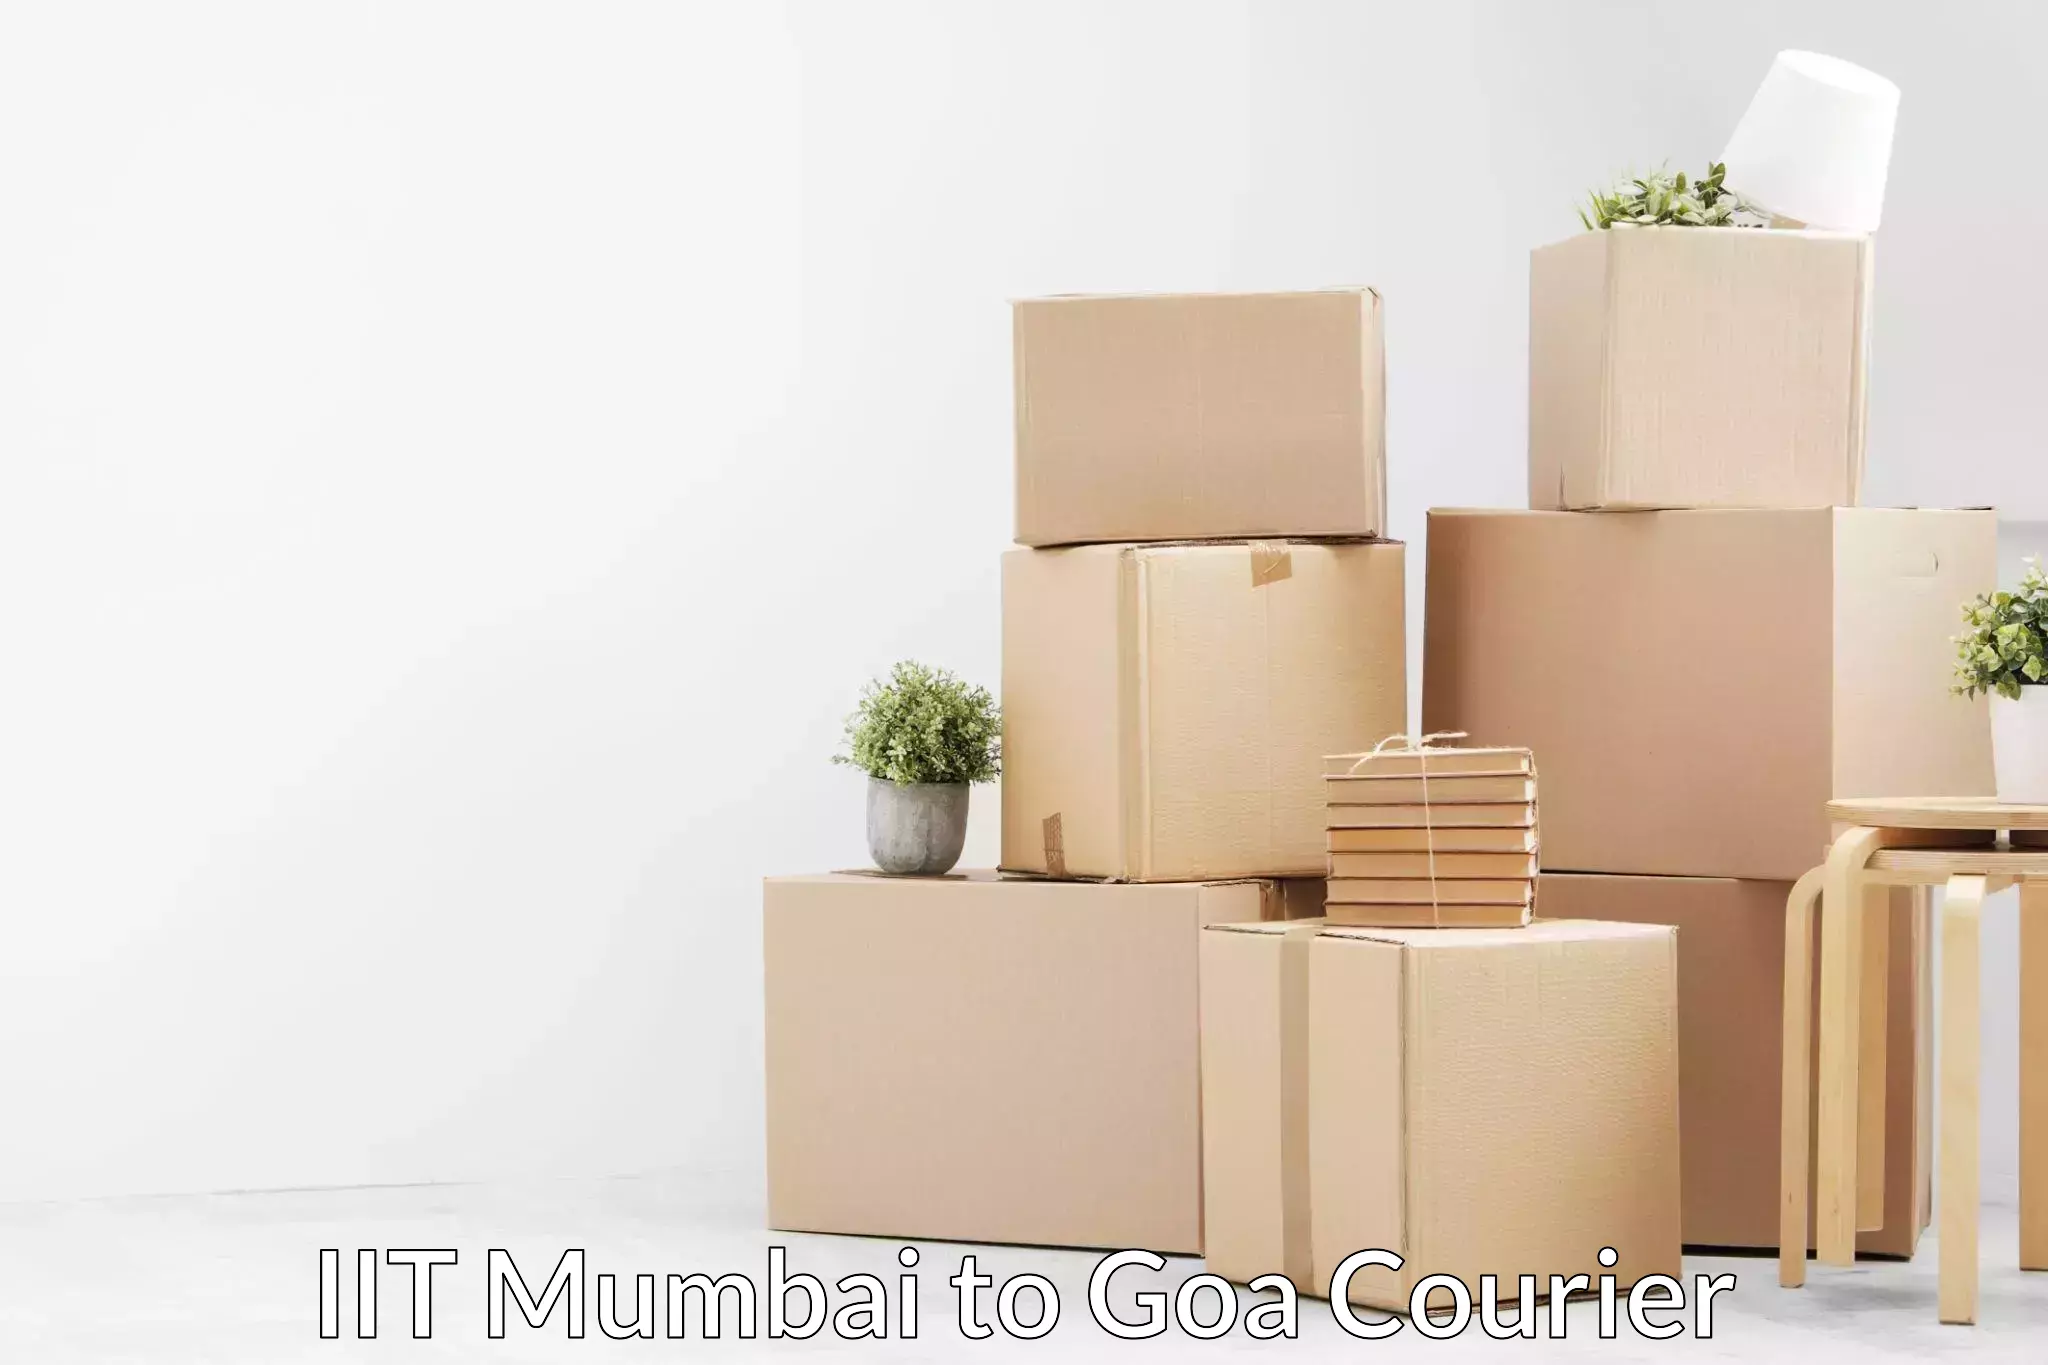 Home furniture moving IIT Mumbai to IIT Goa